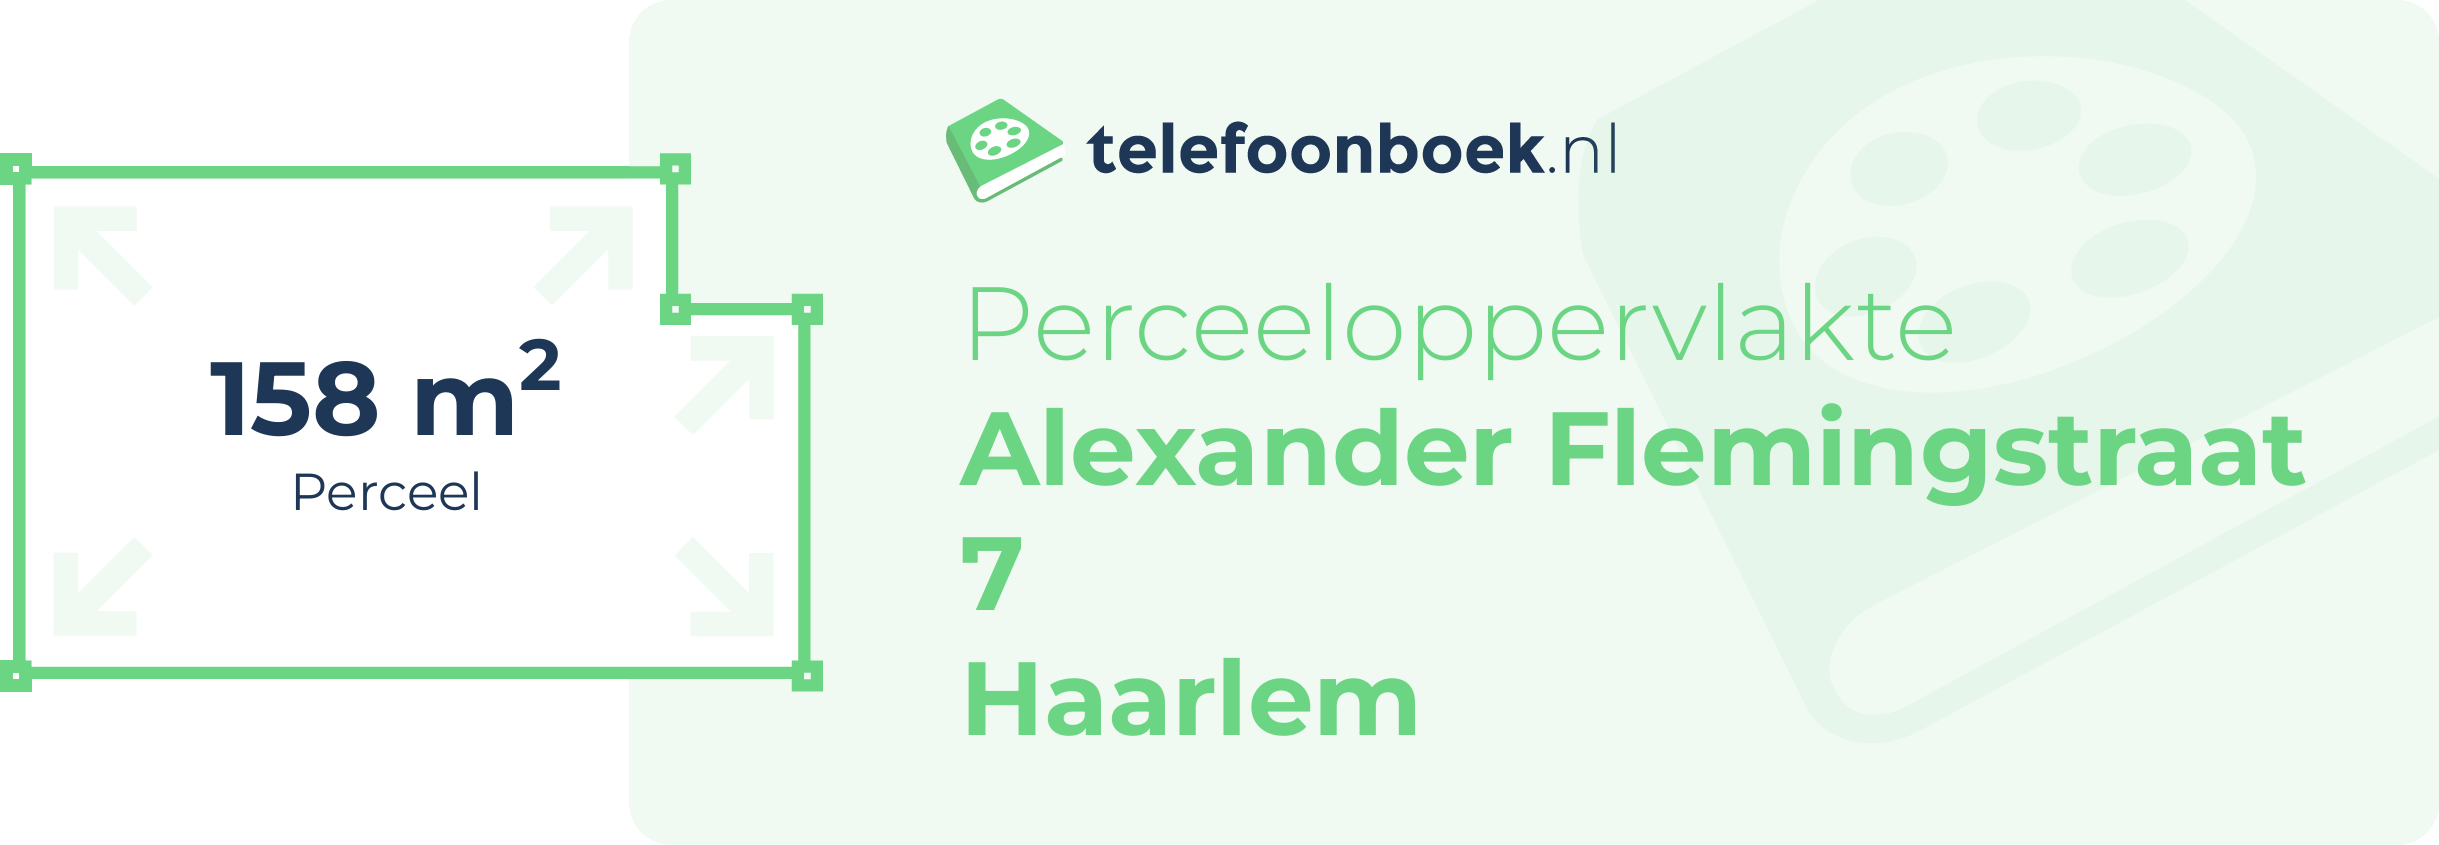 Perceeloppervlakte Alexander Flemingstraat 7 Haarlem